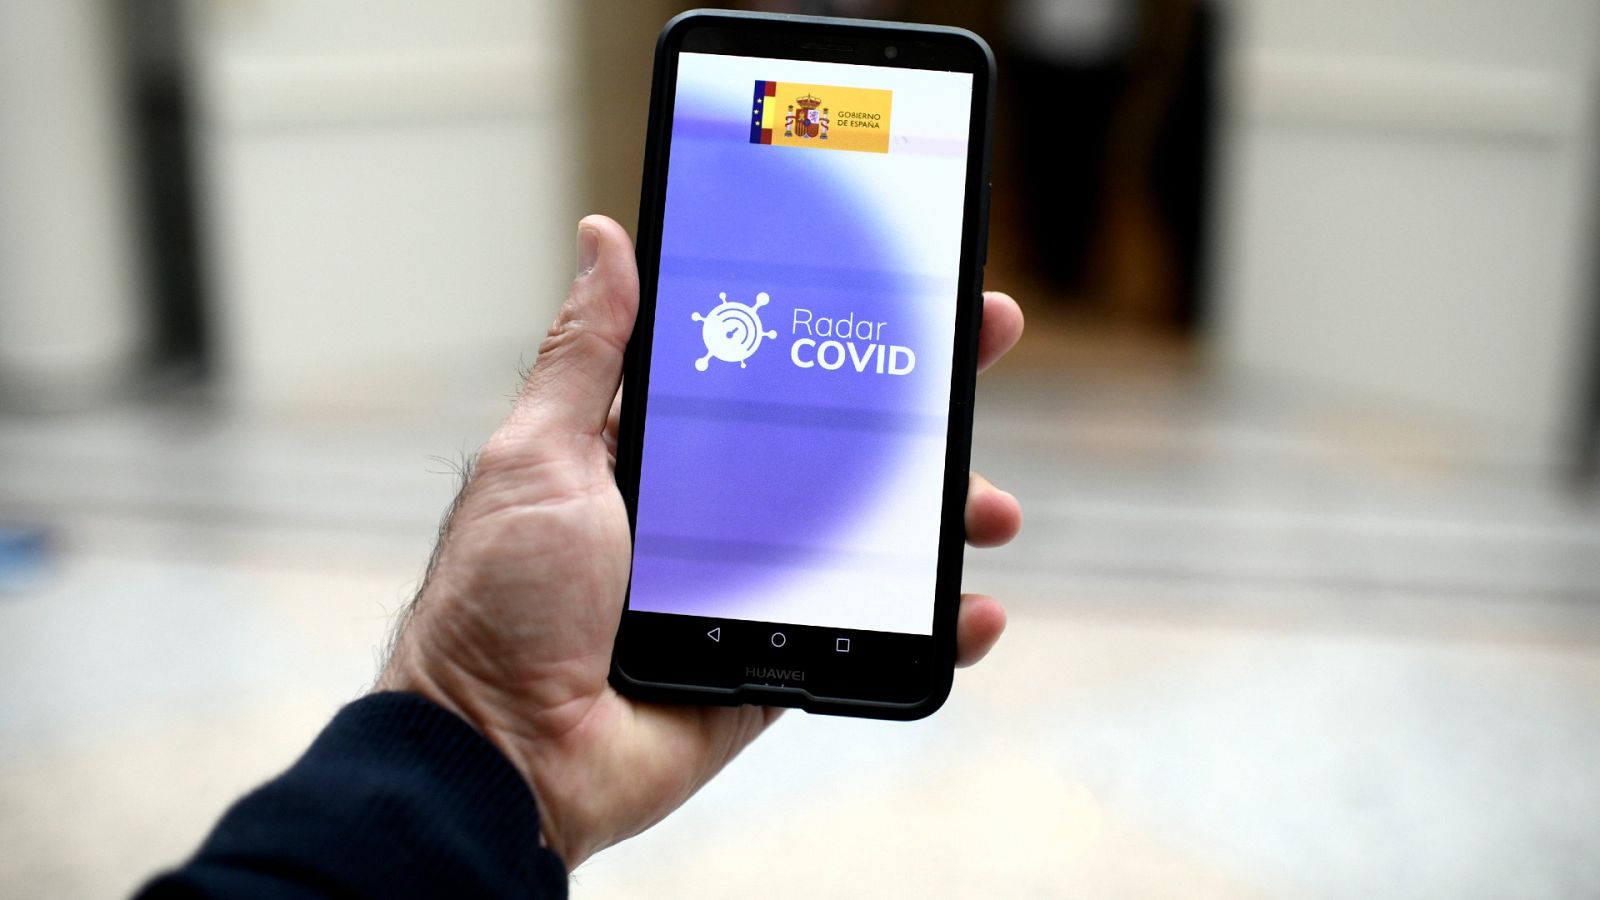 La app Radar Covid fracasa en España: cuesta encontrar usuarios activos